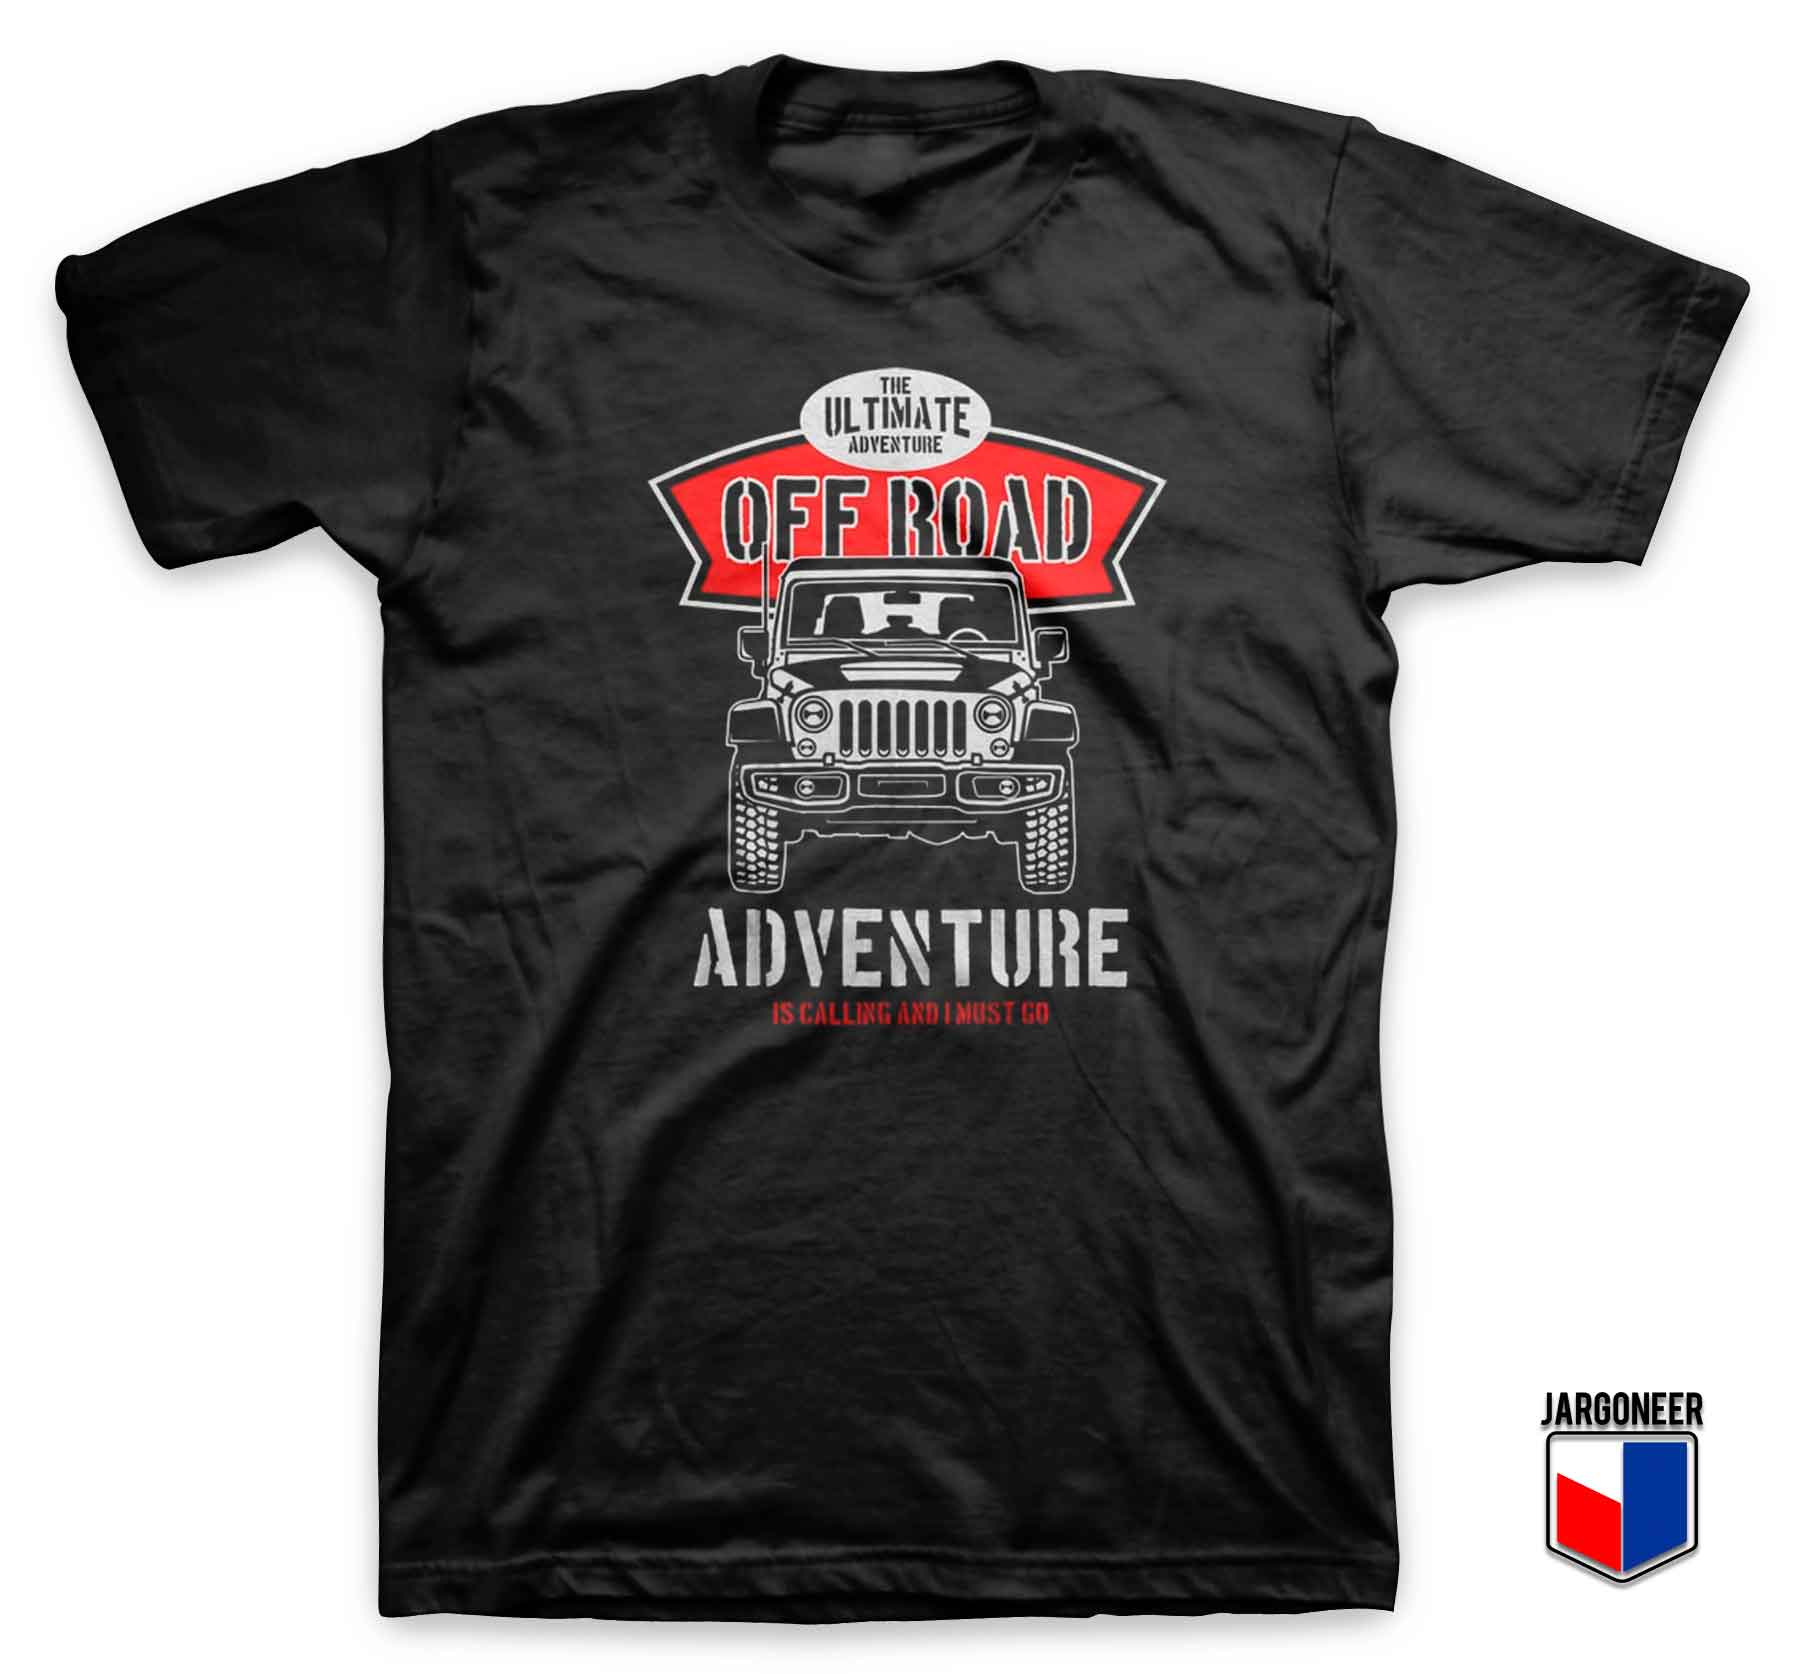 Adventure Is Calling T Shirt - Shop Unique Graphic Cool Shirt Designs